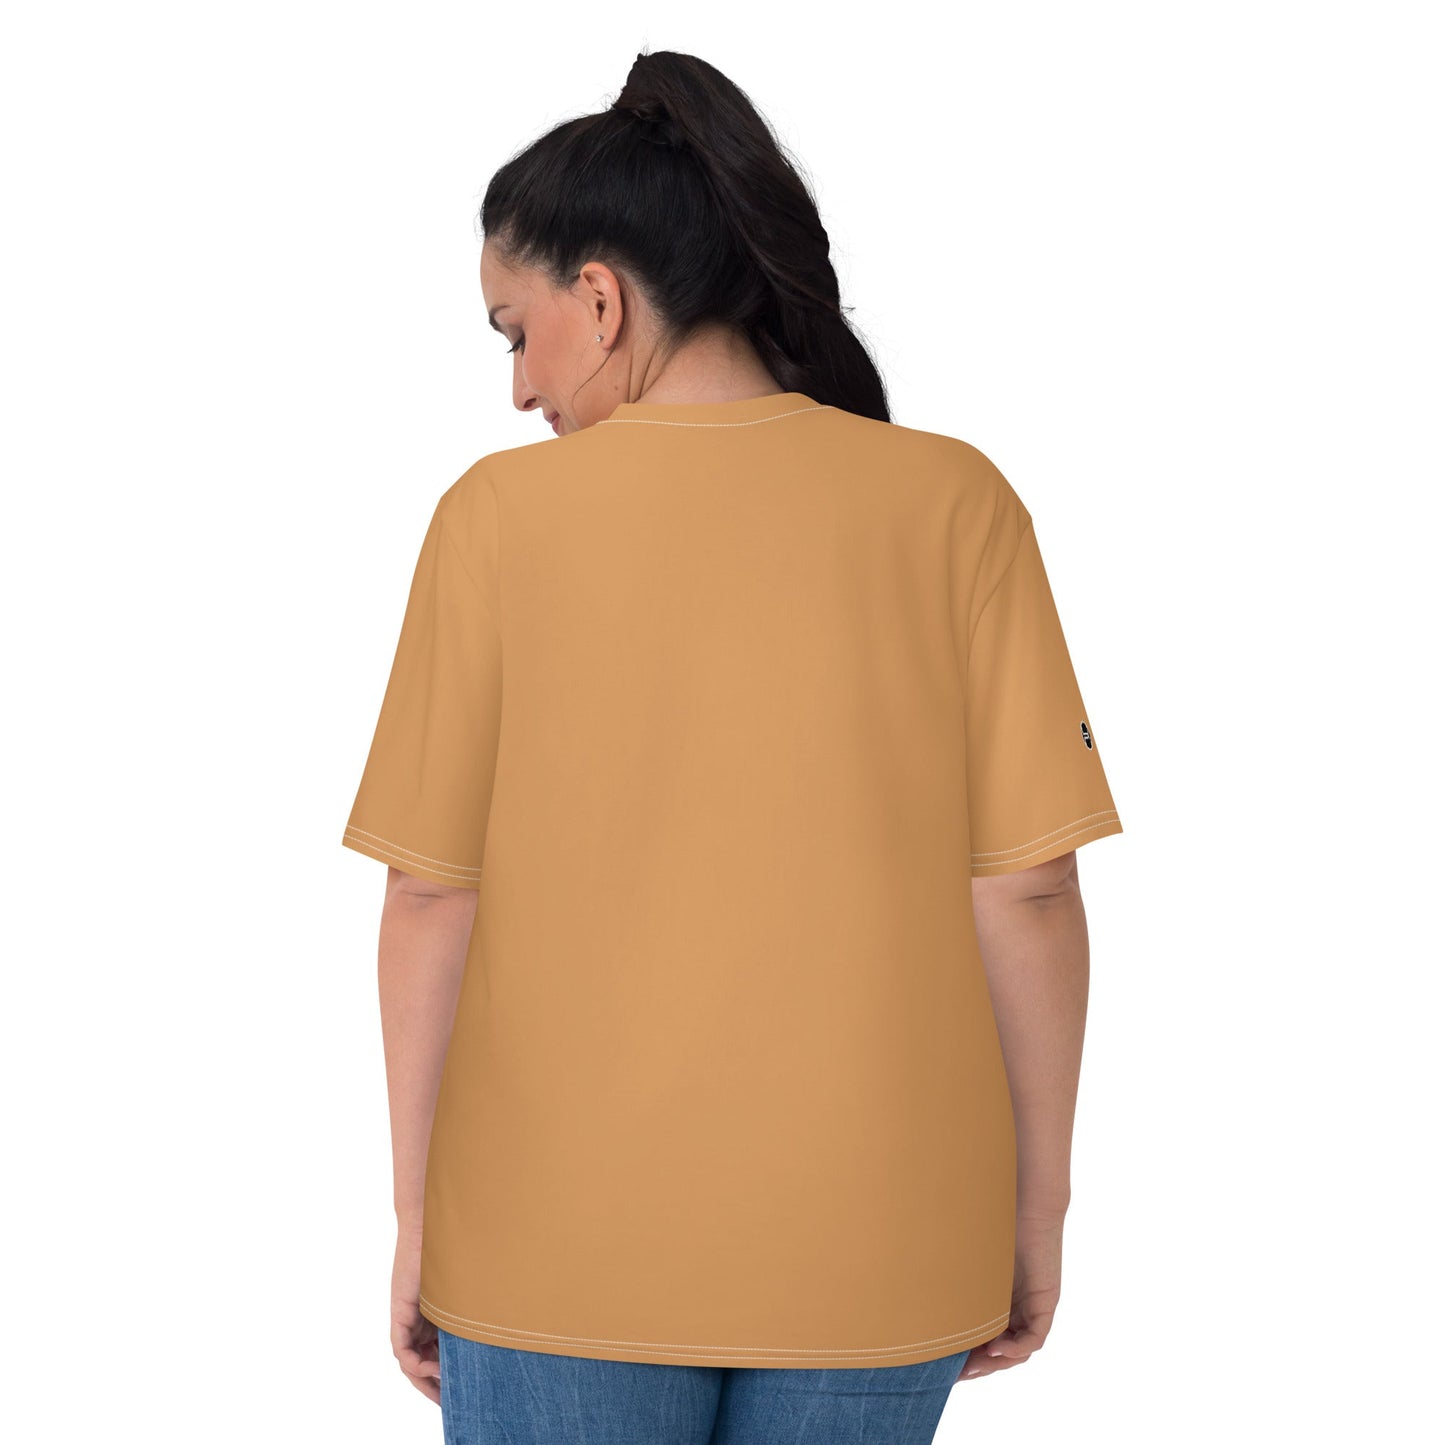 womens-premium-tshirt-candle-white-mustard